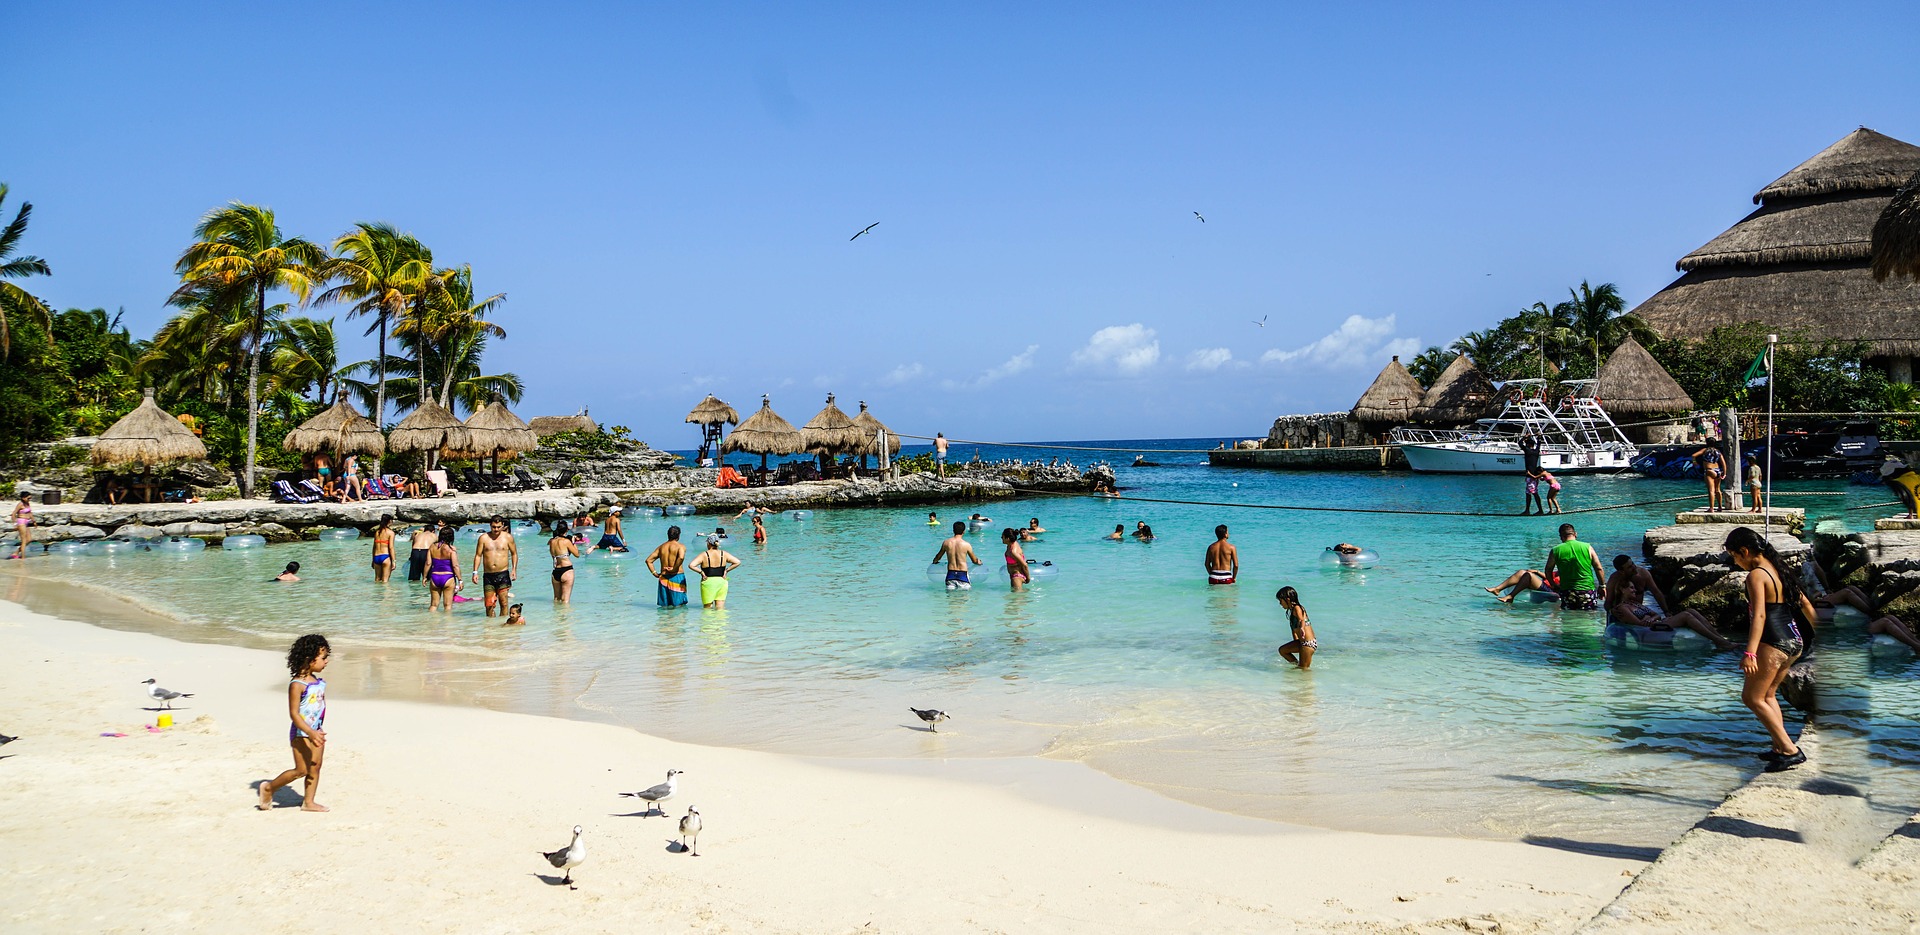 Cancun Urlaub eine Woche günstig ab 540,00€ buchen bei TUI